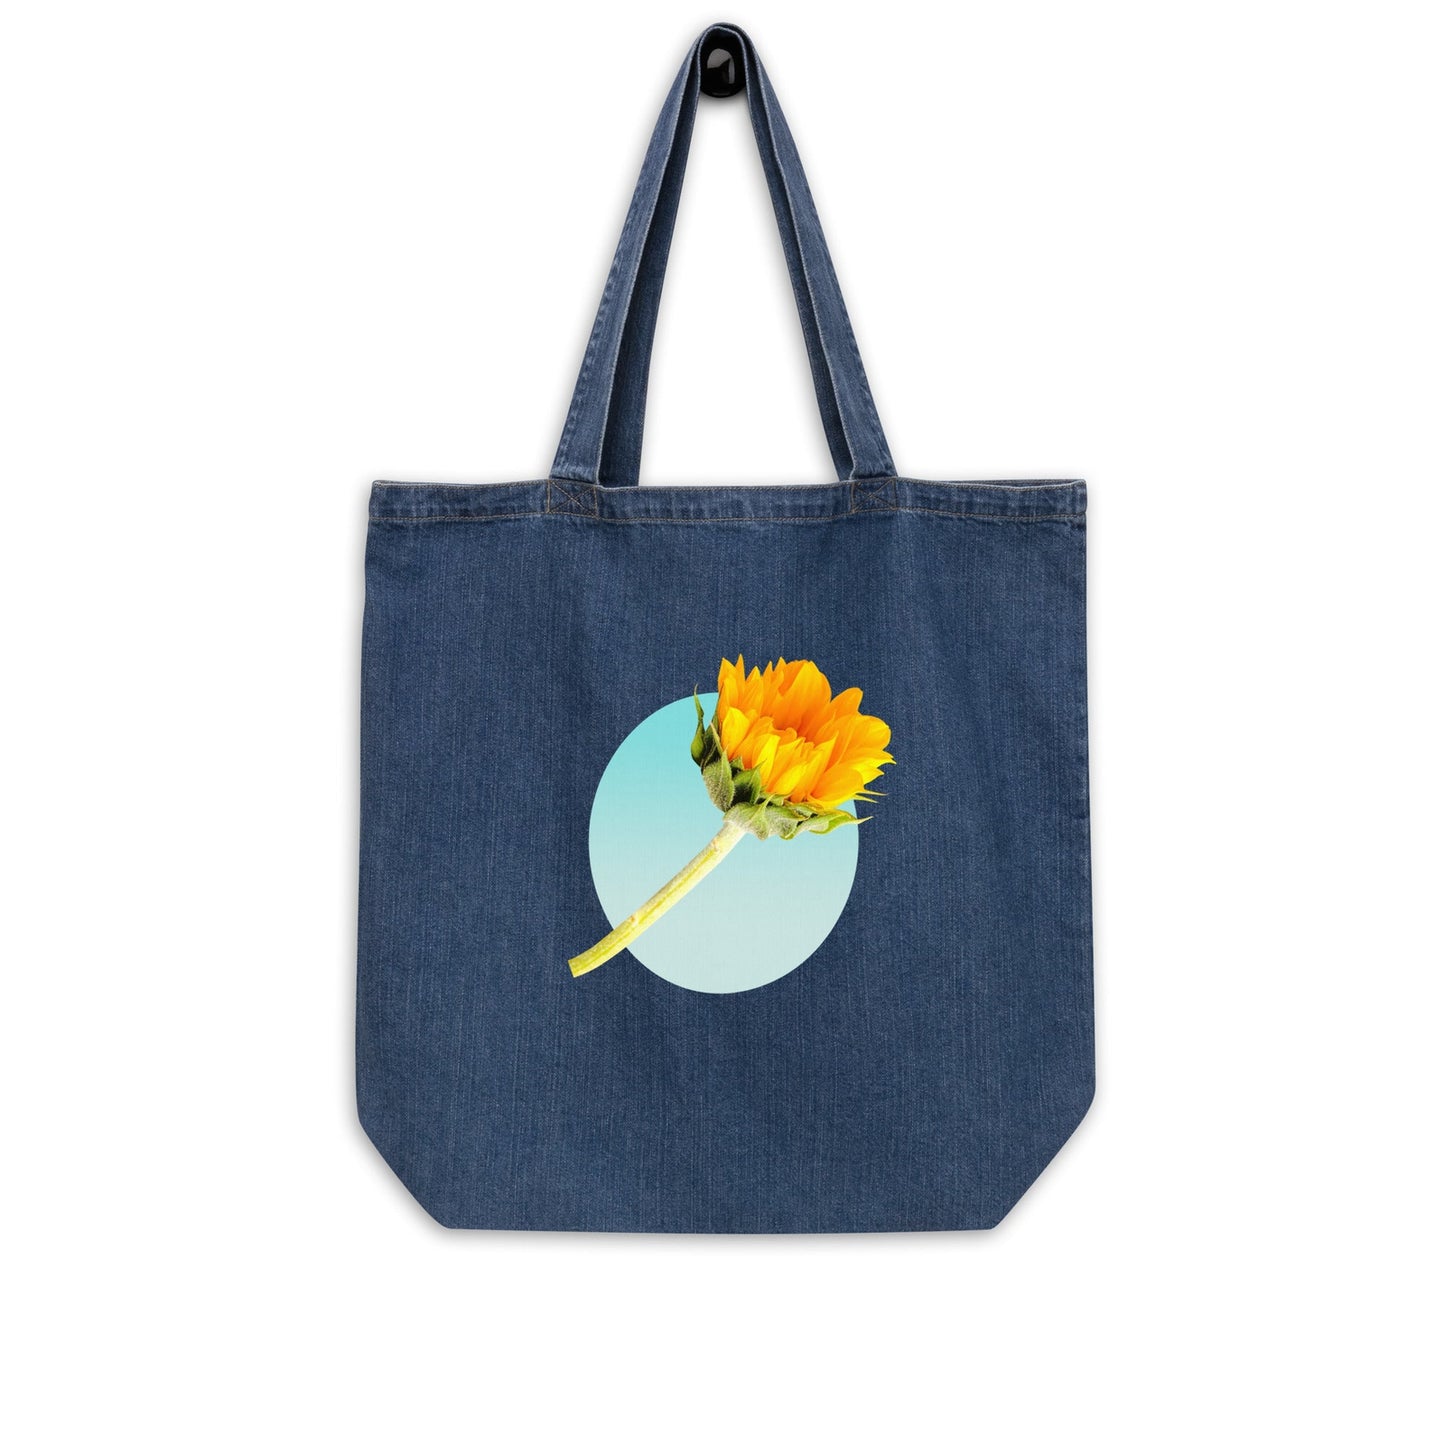 Sunflower Bag - Organic denim bag